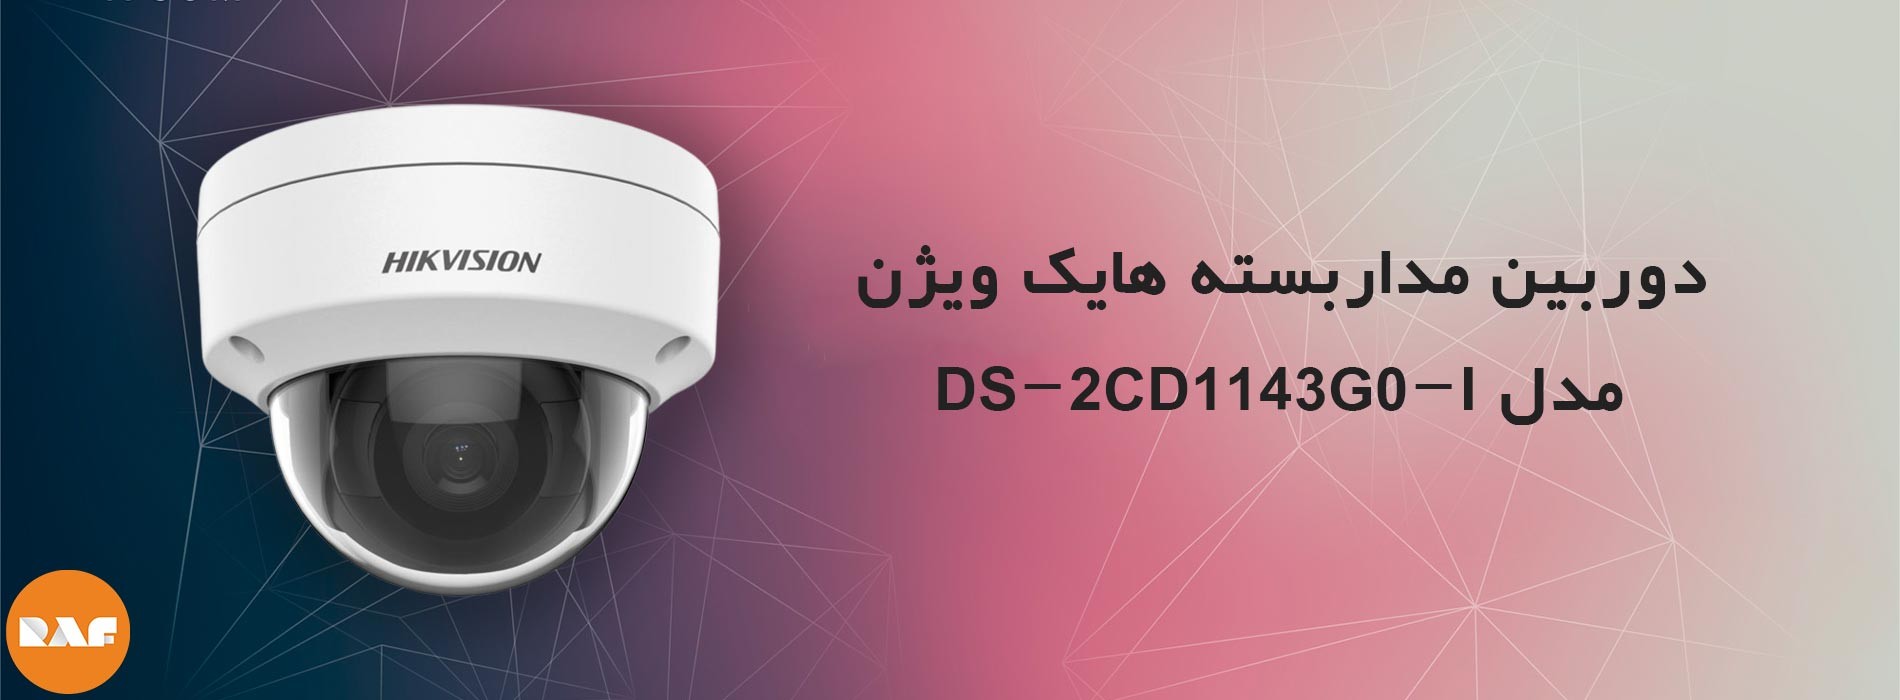 دوربین مداربسته هایک ویژن مدل DS-2CD1143G0-I